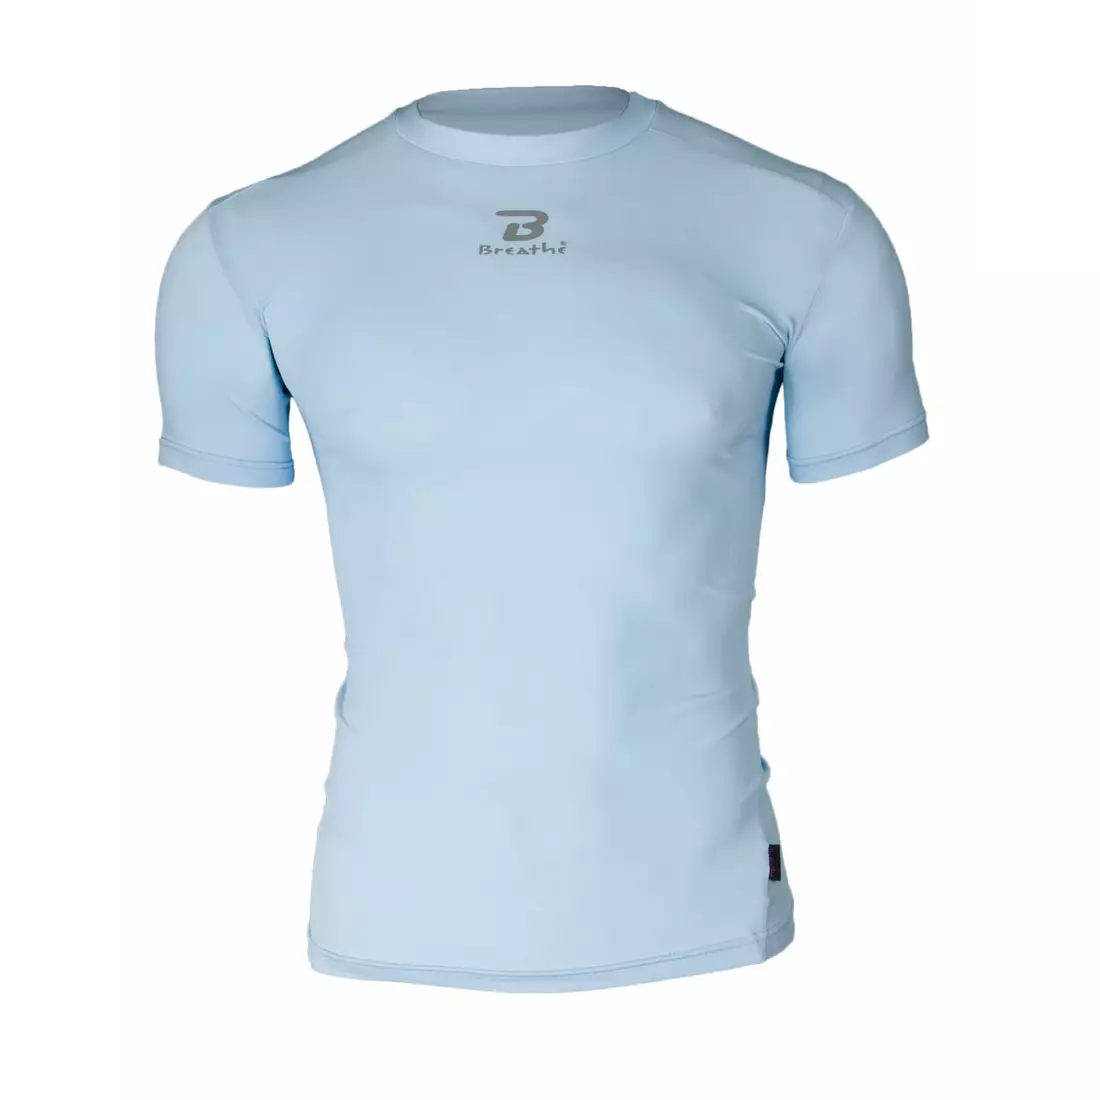 BREATHE short-sleeved compression shirt, blue